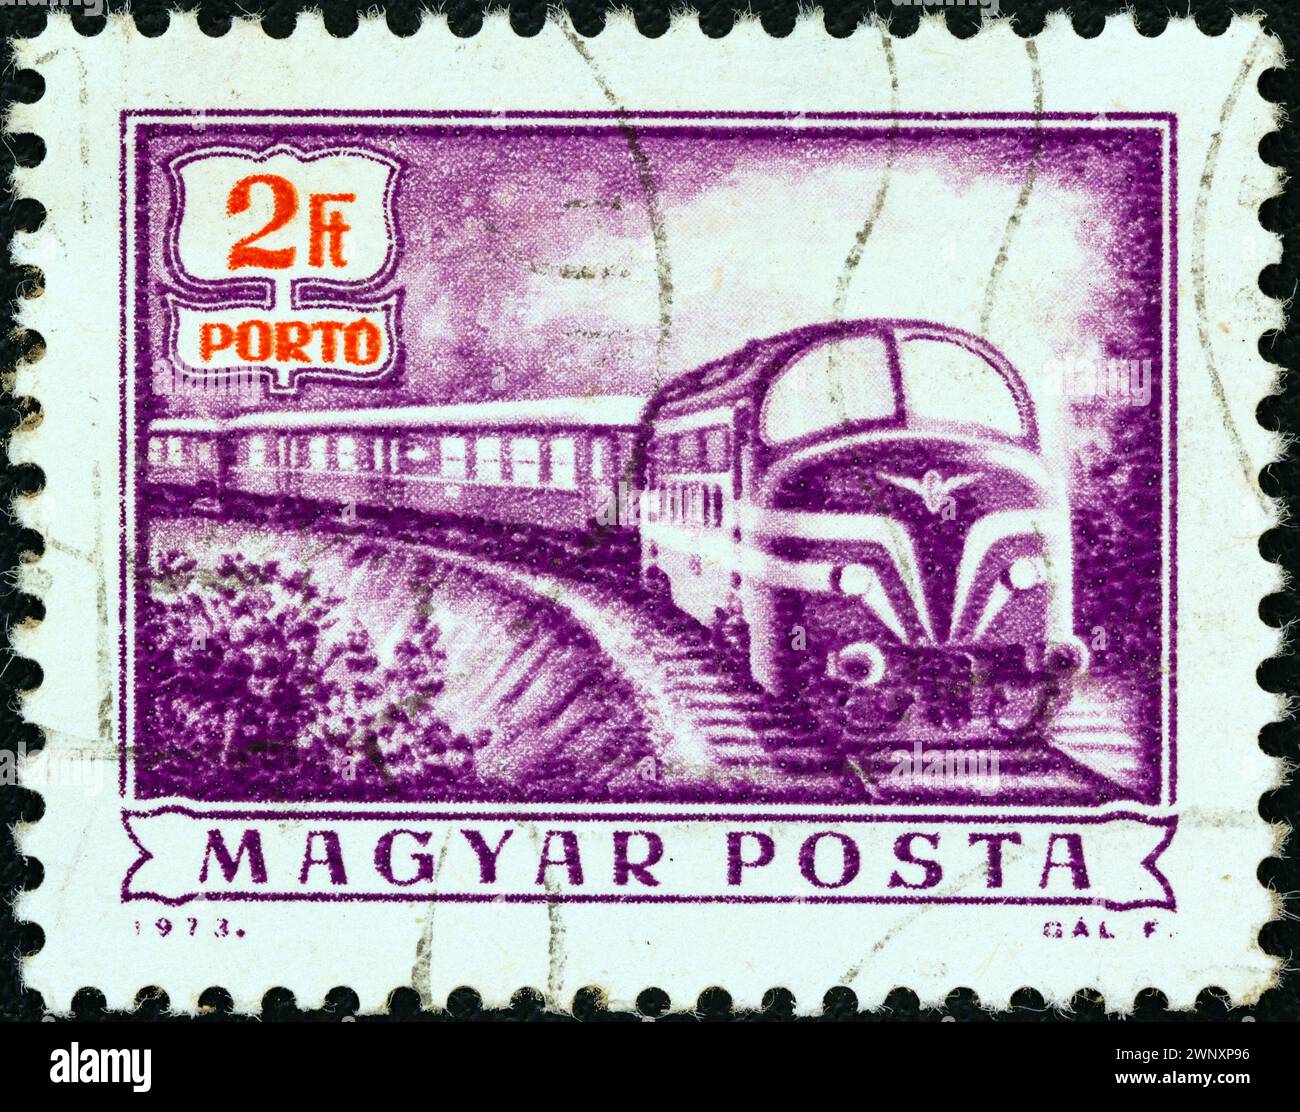 HONGRIE - VERS 1973 : un timbre imprimé en Hongrie à partir de l'émission "opérations postales" montre un train postal Diesel, vers 1973. Banque D'Images